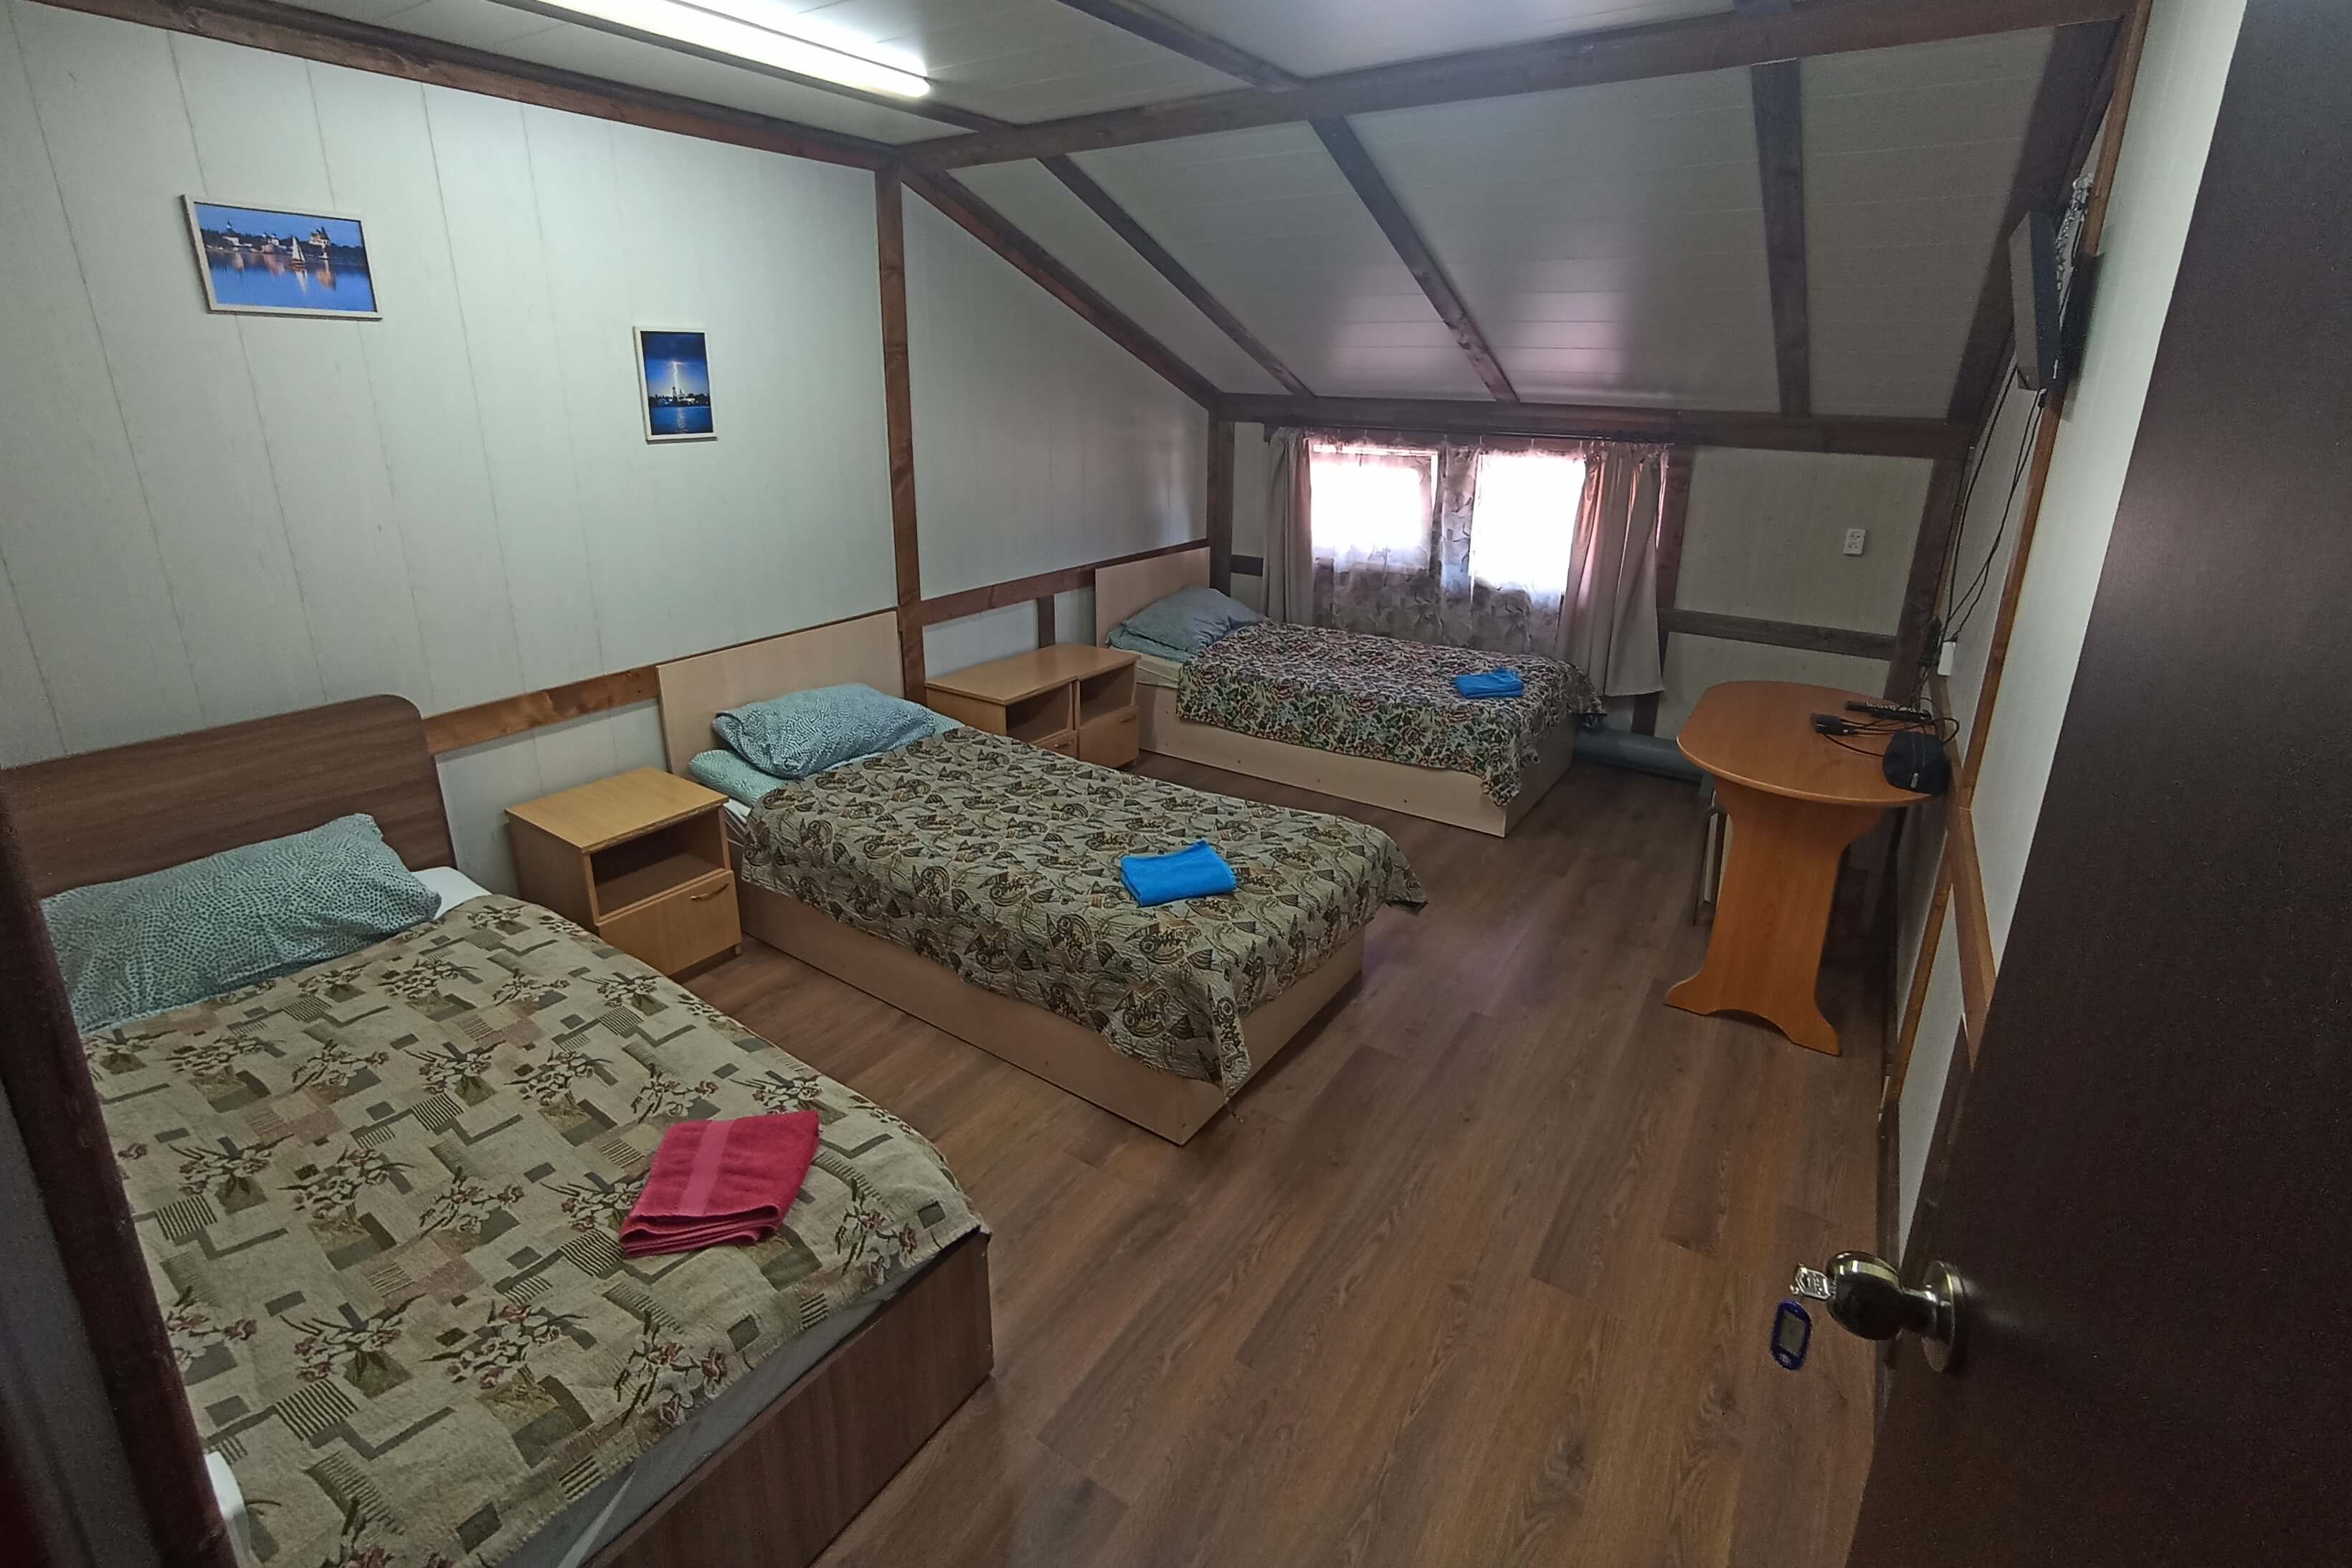 Комната с тремя отдельными кроватями.